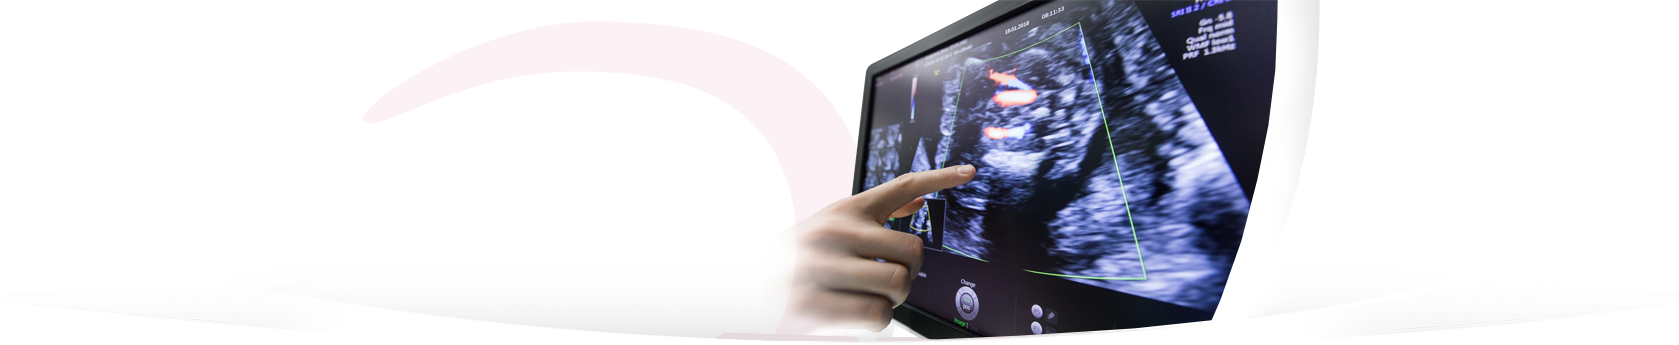 Špičková ultrazvuková diagnostika